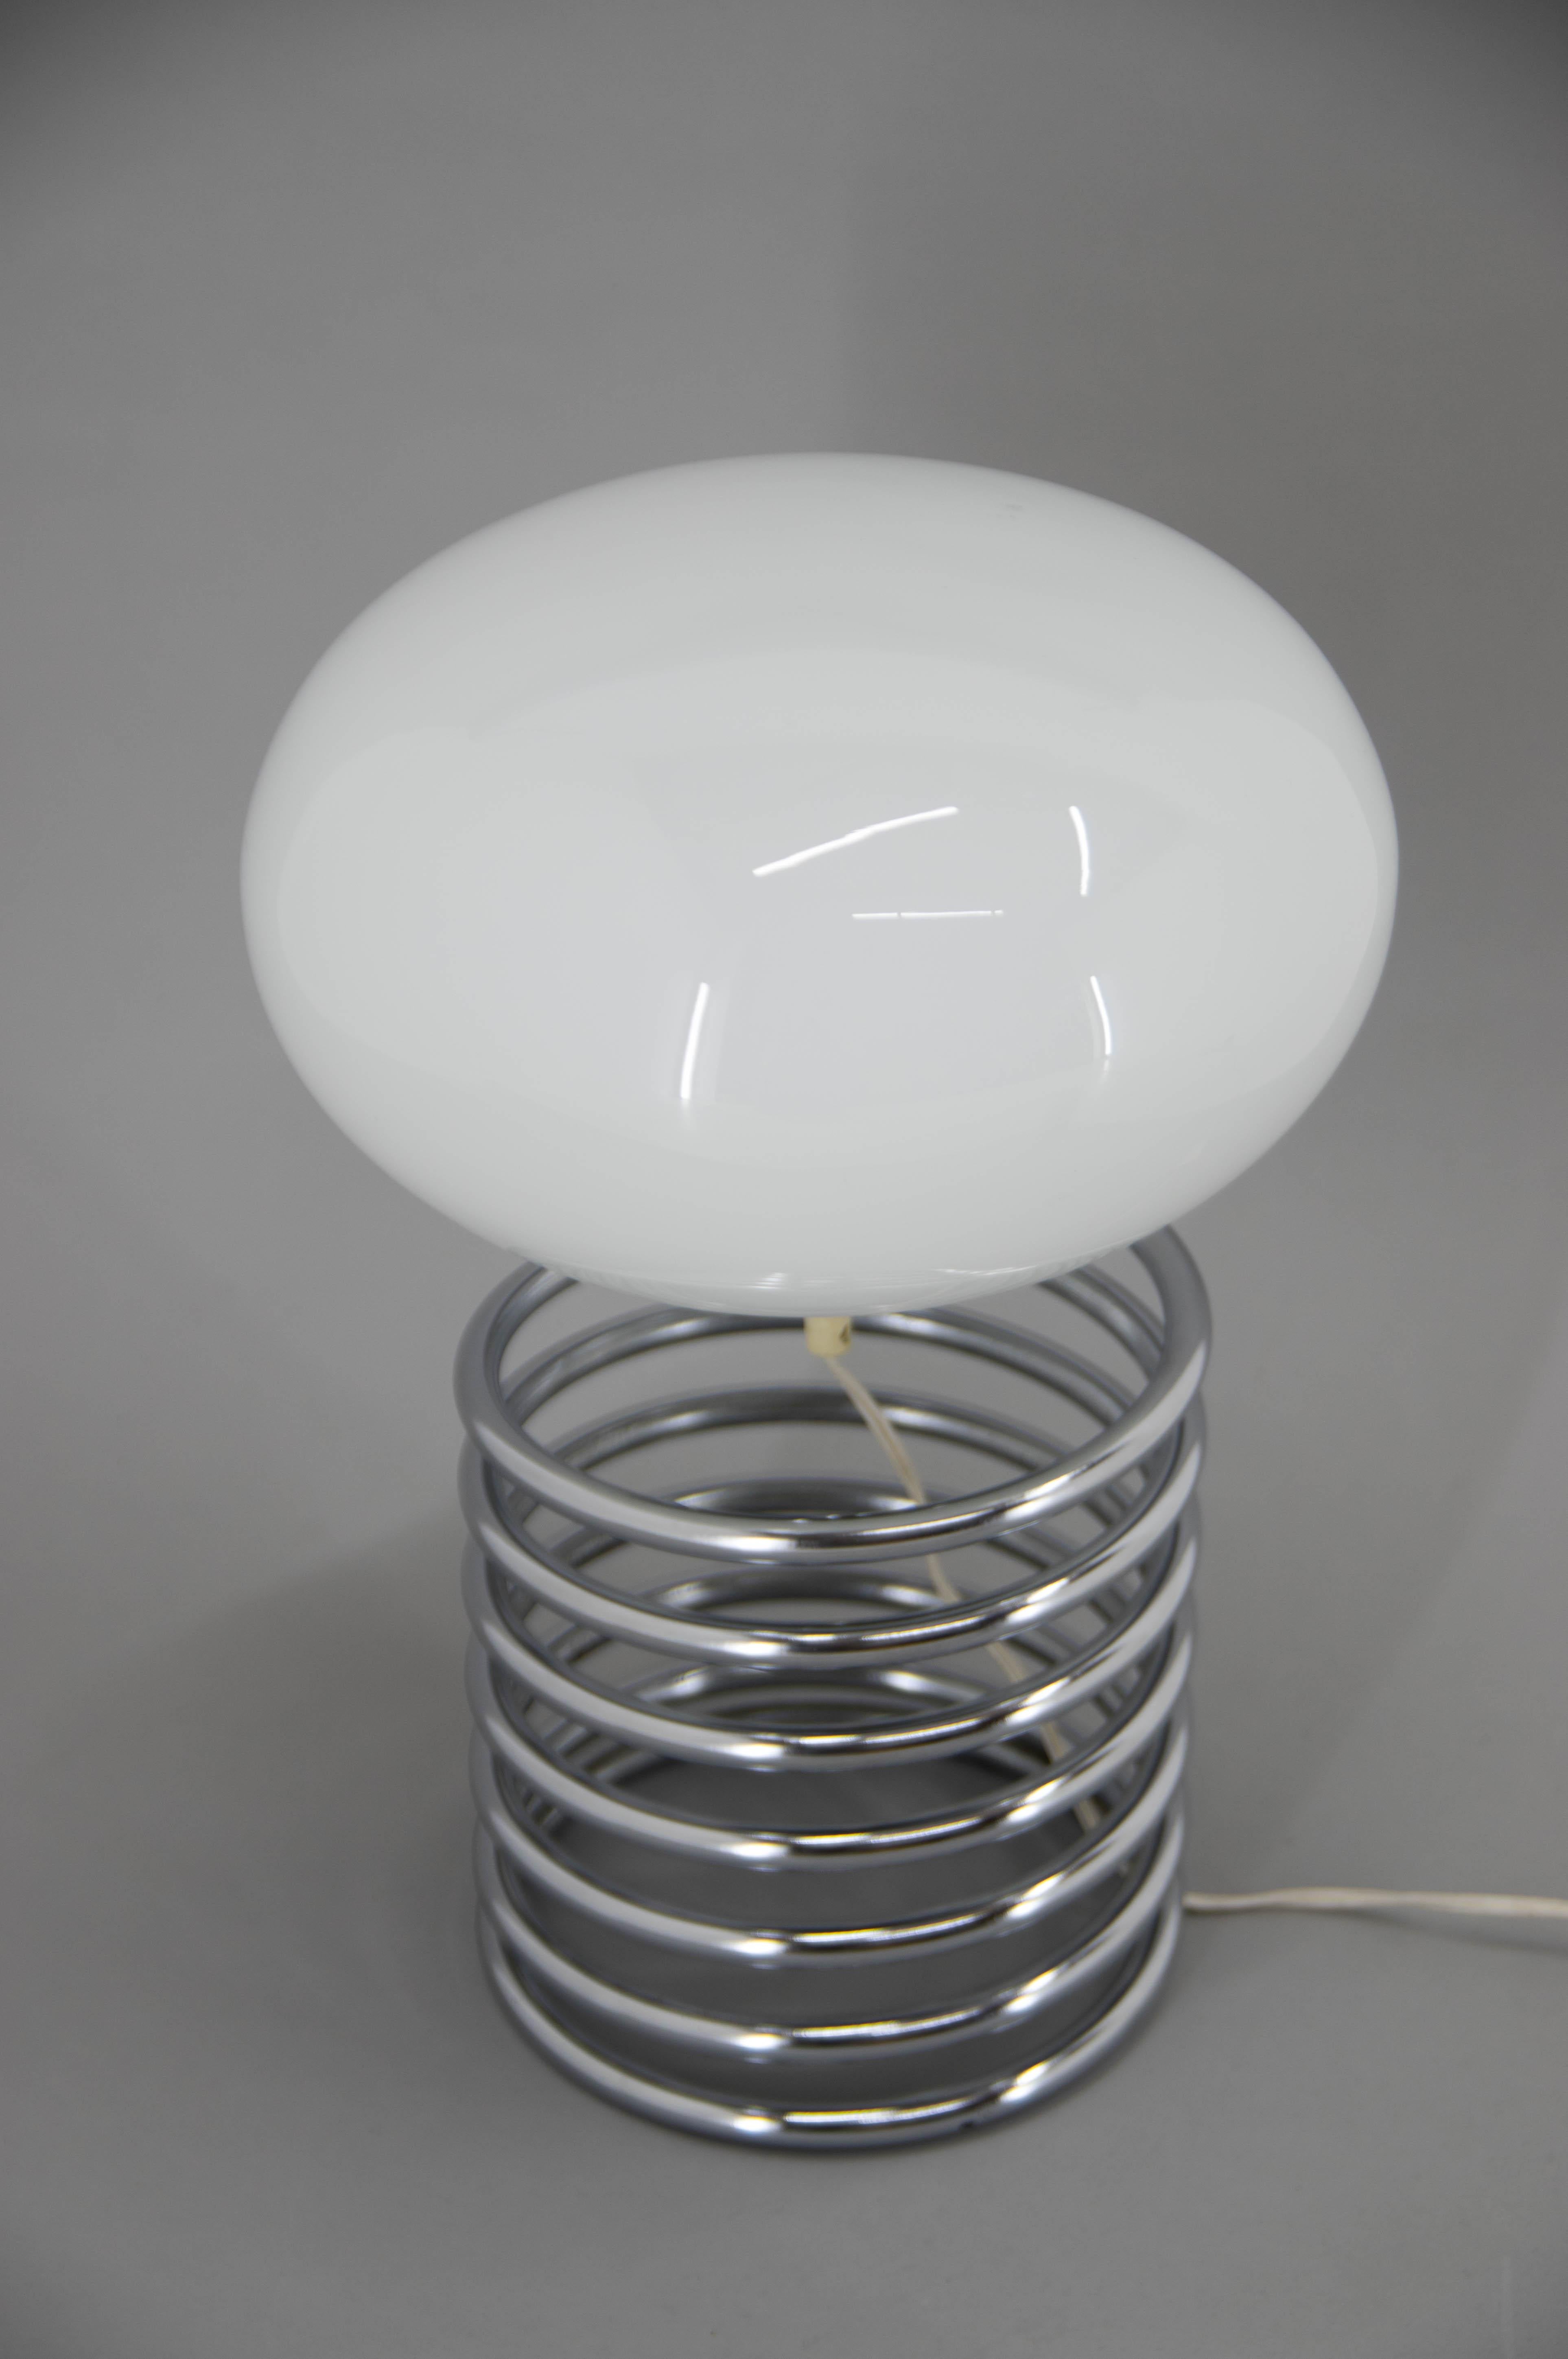 Lampe de table originale à spirale conçue par Ingo Maurer pour Honsel en très bon état d'origine.
Labellisé
1x60W, ampoule E25-E27
Adaptateur pour prise américaine inclus